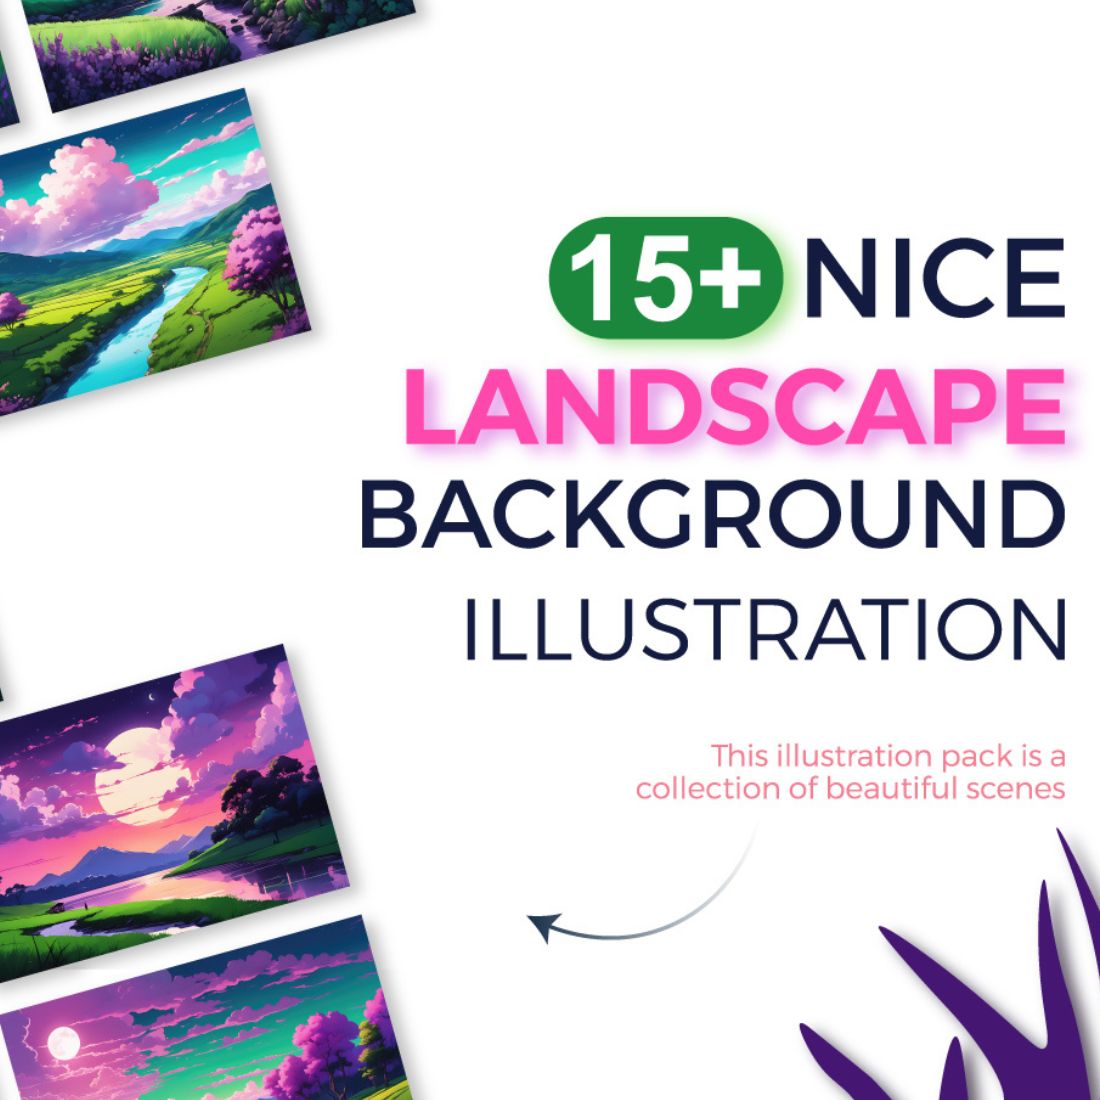 Landscape background illustration bundle, nature illustration preview image.